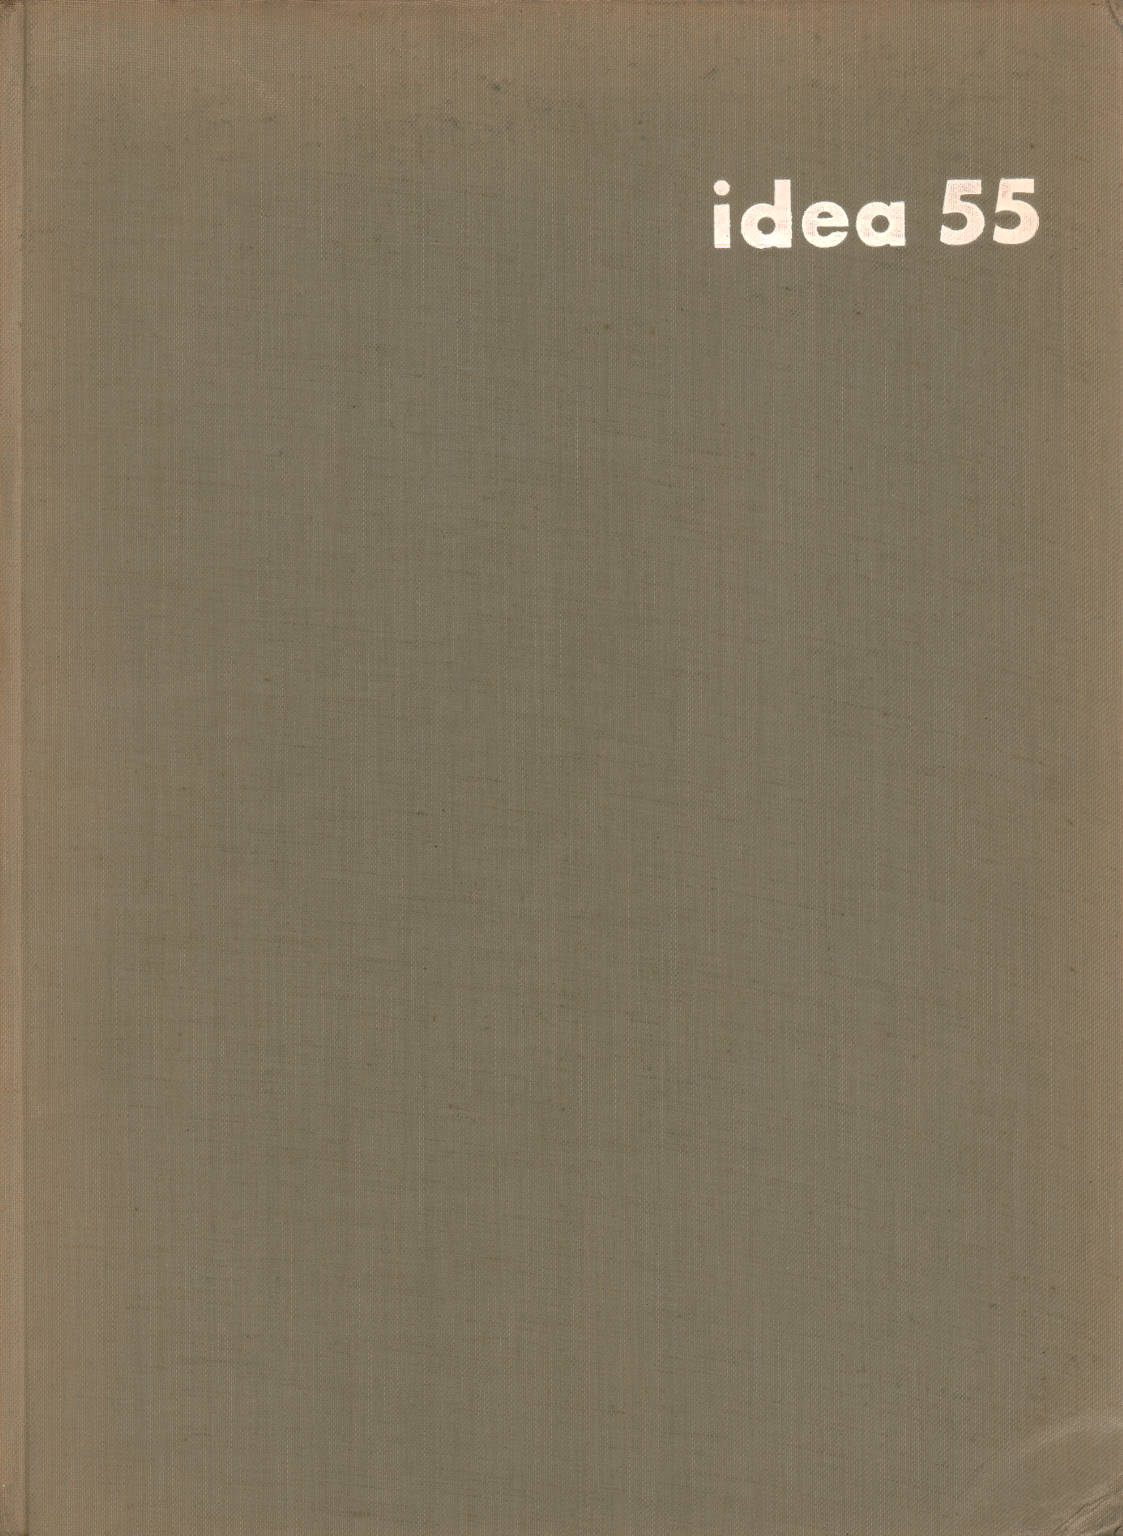 Idee 55, Gerd Hatje